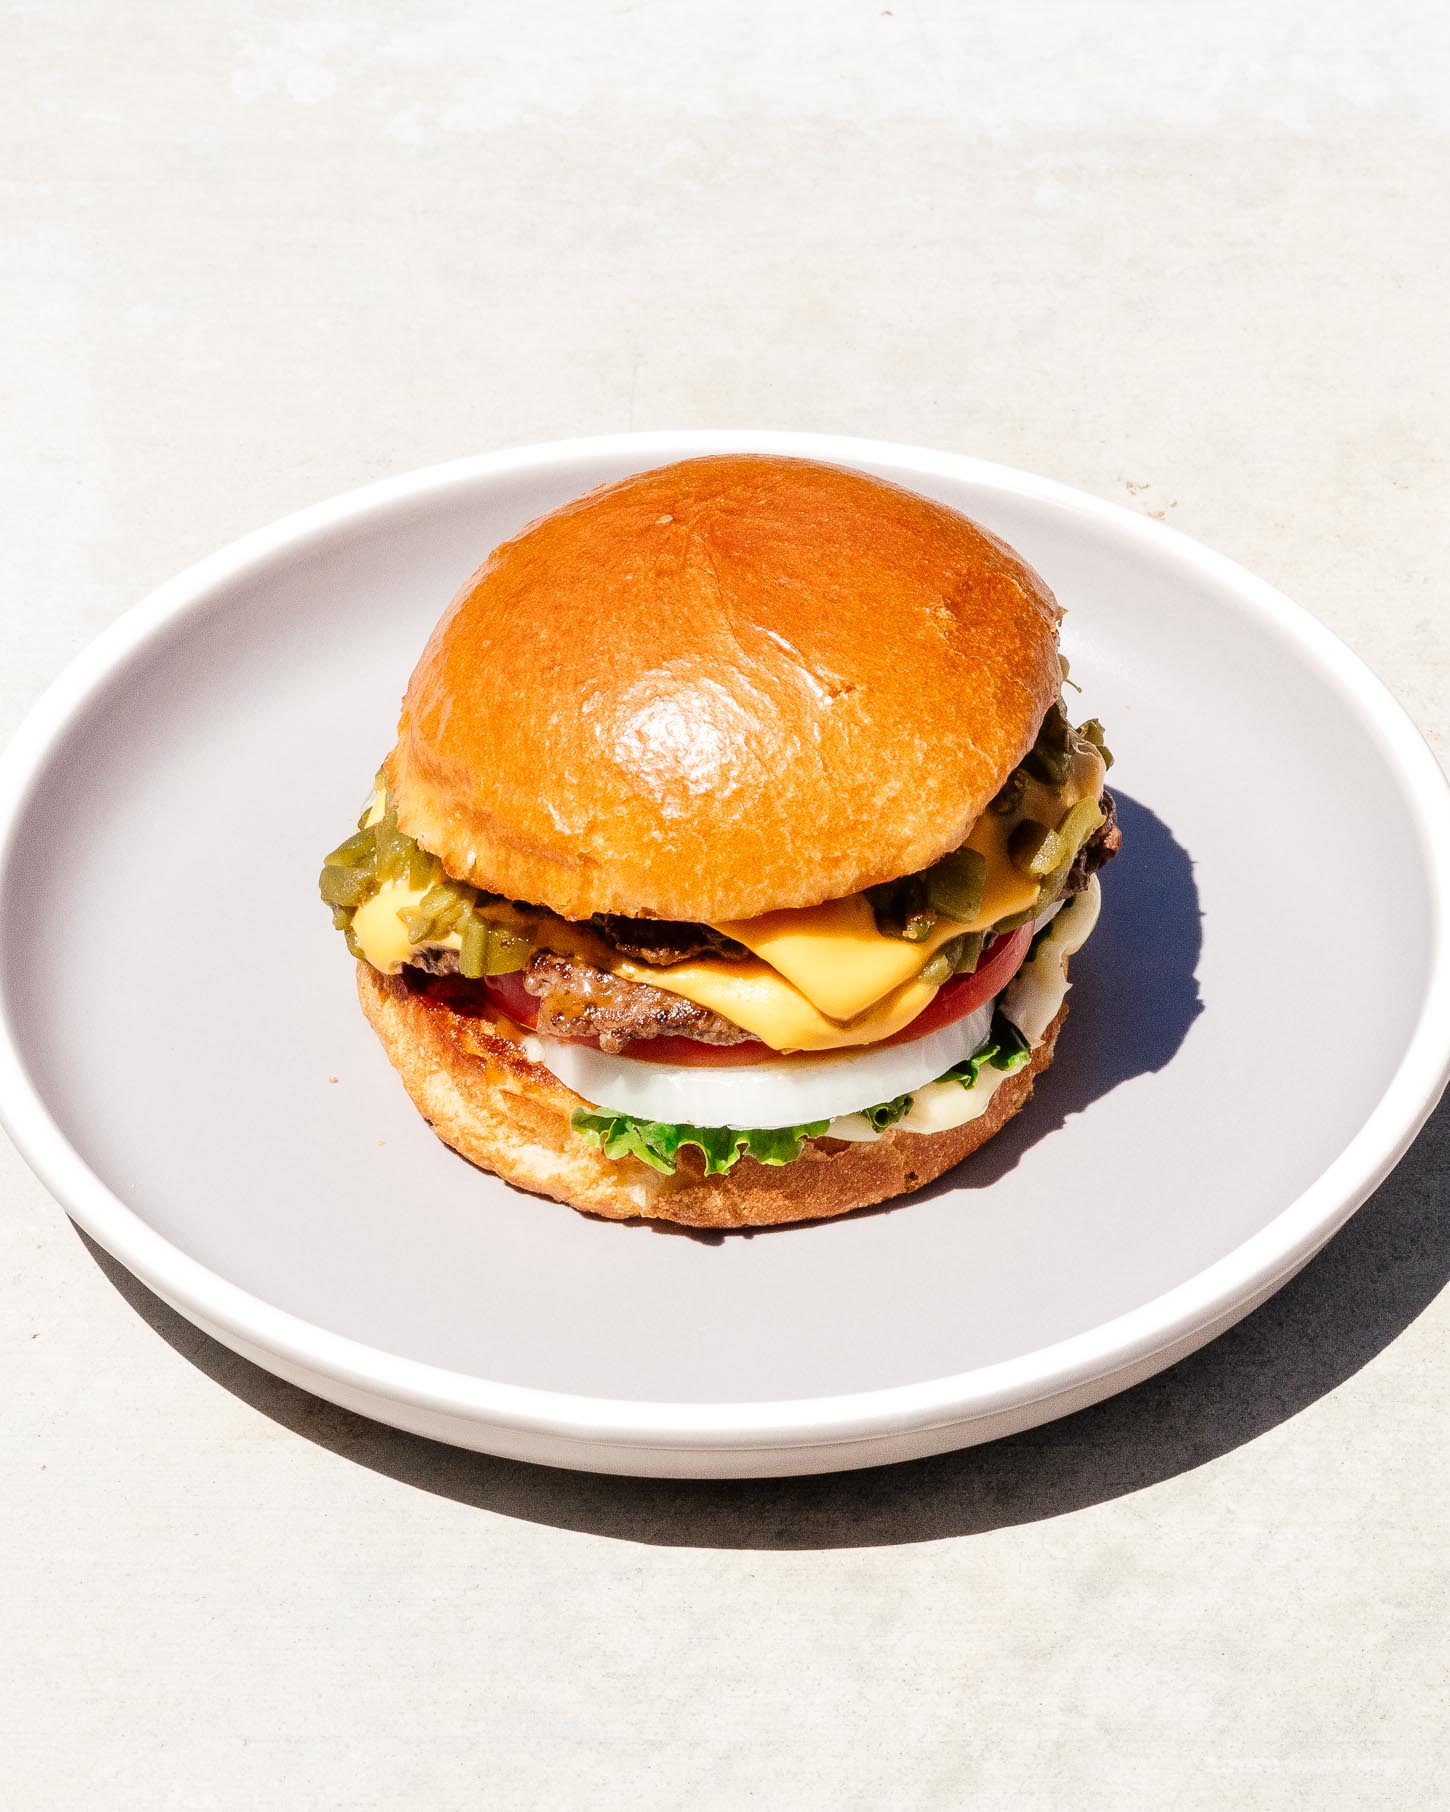 Un cheeseburger au piment vert Hatch pourrait être la meilleure chose du Nouveau-Mexique.  Super juteux, légèrement épicé et tellement addictif.  C'est la recette de burger que vous voulez faire en ce moment.  #burger #burgerrecipe #recipes #dinner #dinnerrecipes #cheeseburger #newmexico